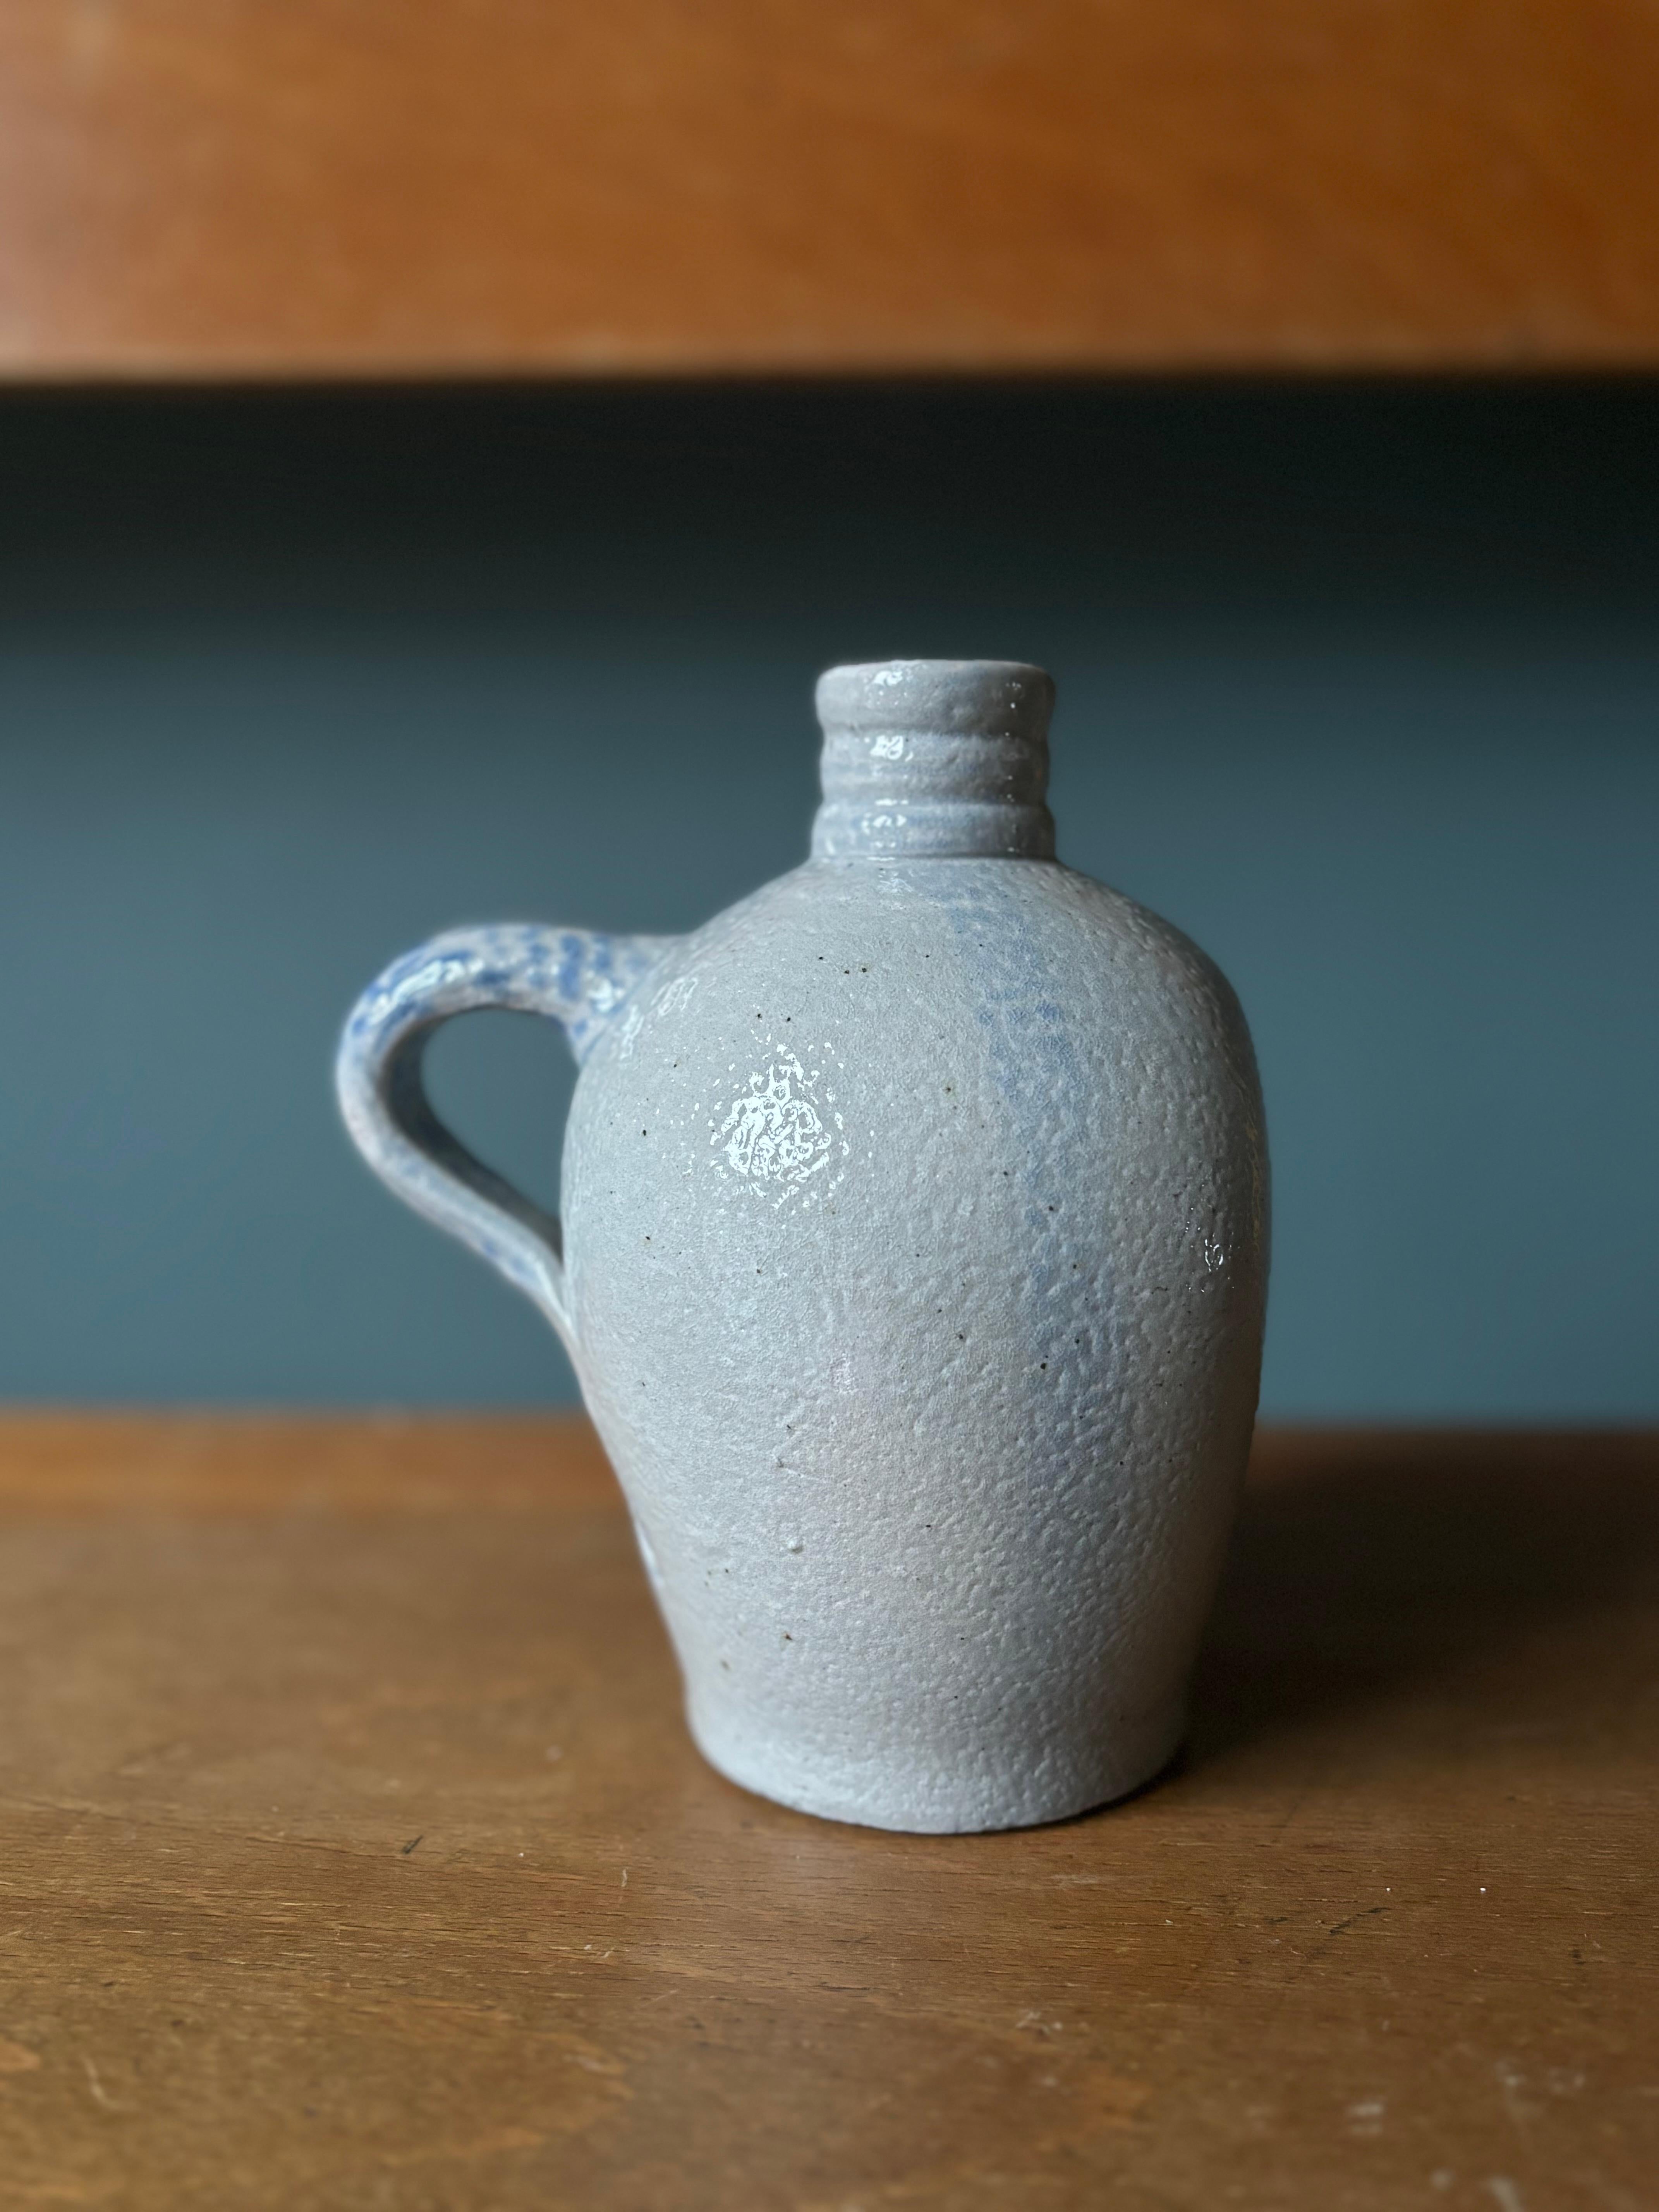 Dekorative Flaschenvase aus Steingut, die ursprünglich in den 1940er Jahren in Dänemark für alkoholische Getränke verwendet wurde. Dicke hellgraue Salzglasur mit babyblauen Flecken entlang des Henkels und der Seiten. Asymmetrische Form mit flacher